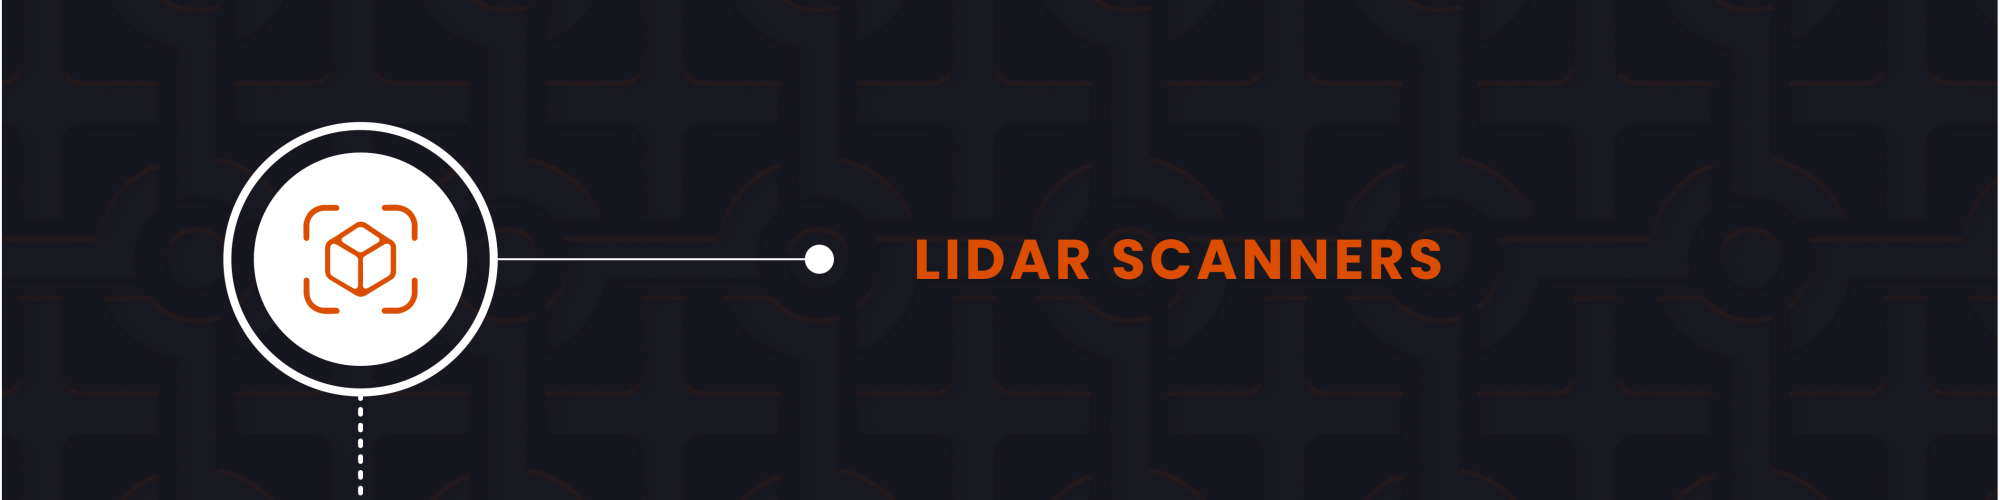 LiDAR Scanners